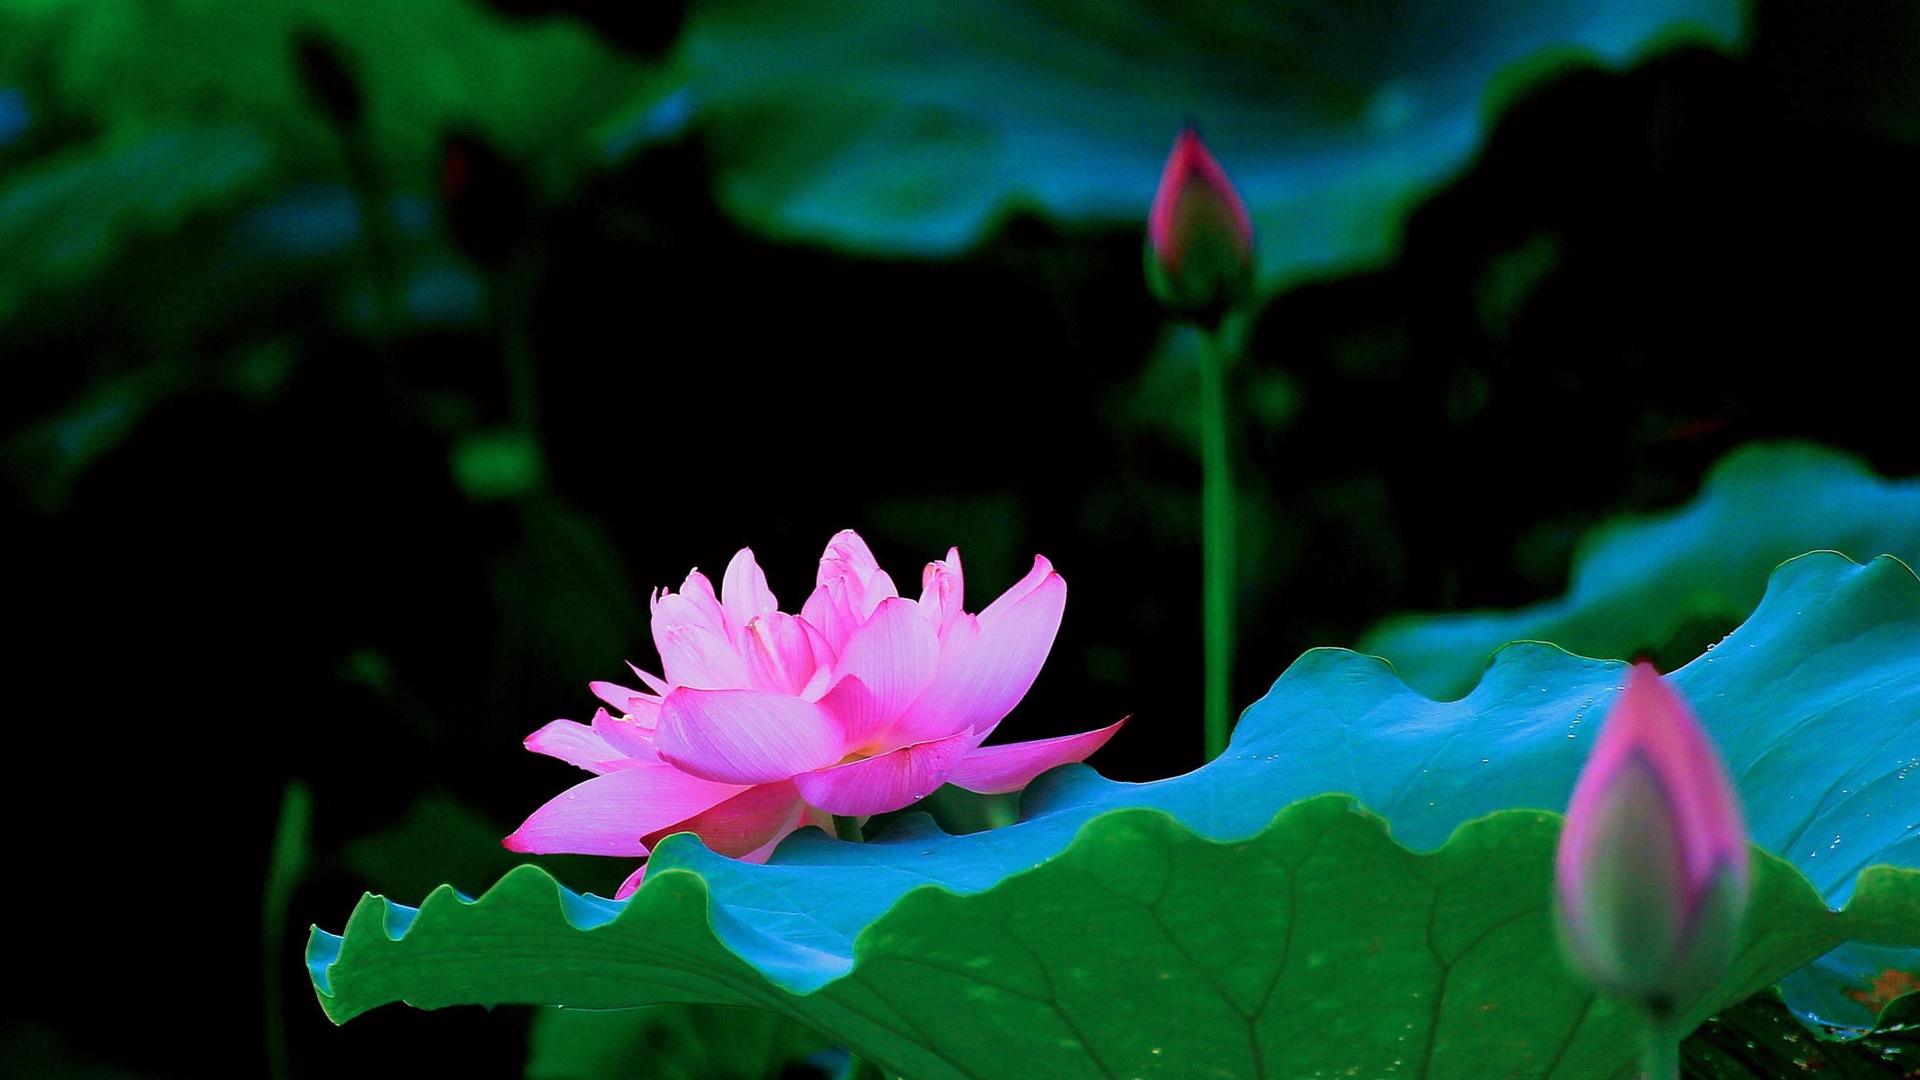 Tải bộ hình nền hoa đẹp siêu nét cho máy tính  AleAle Việt Nam